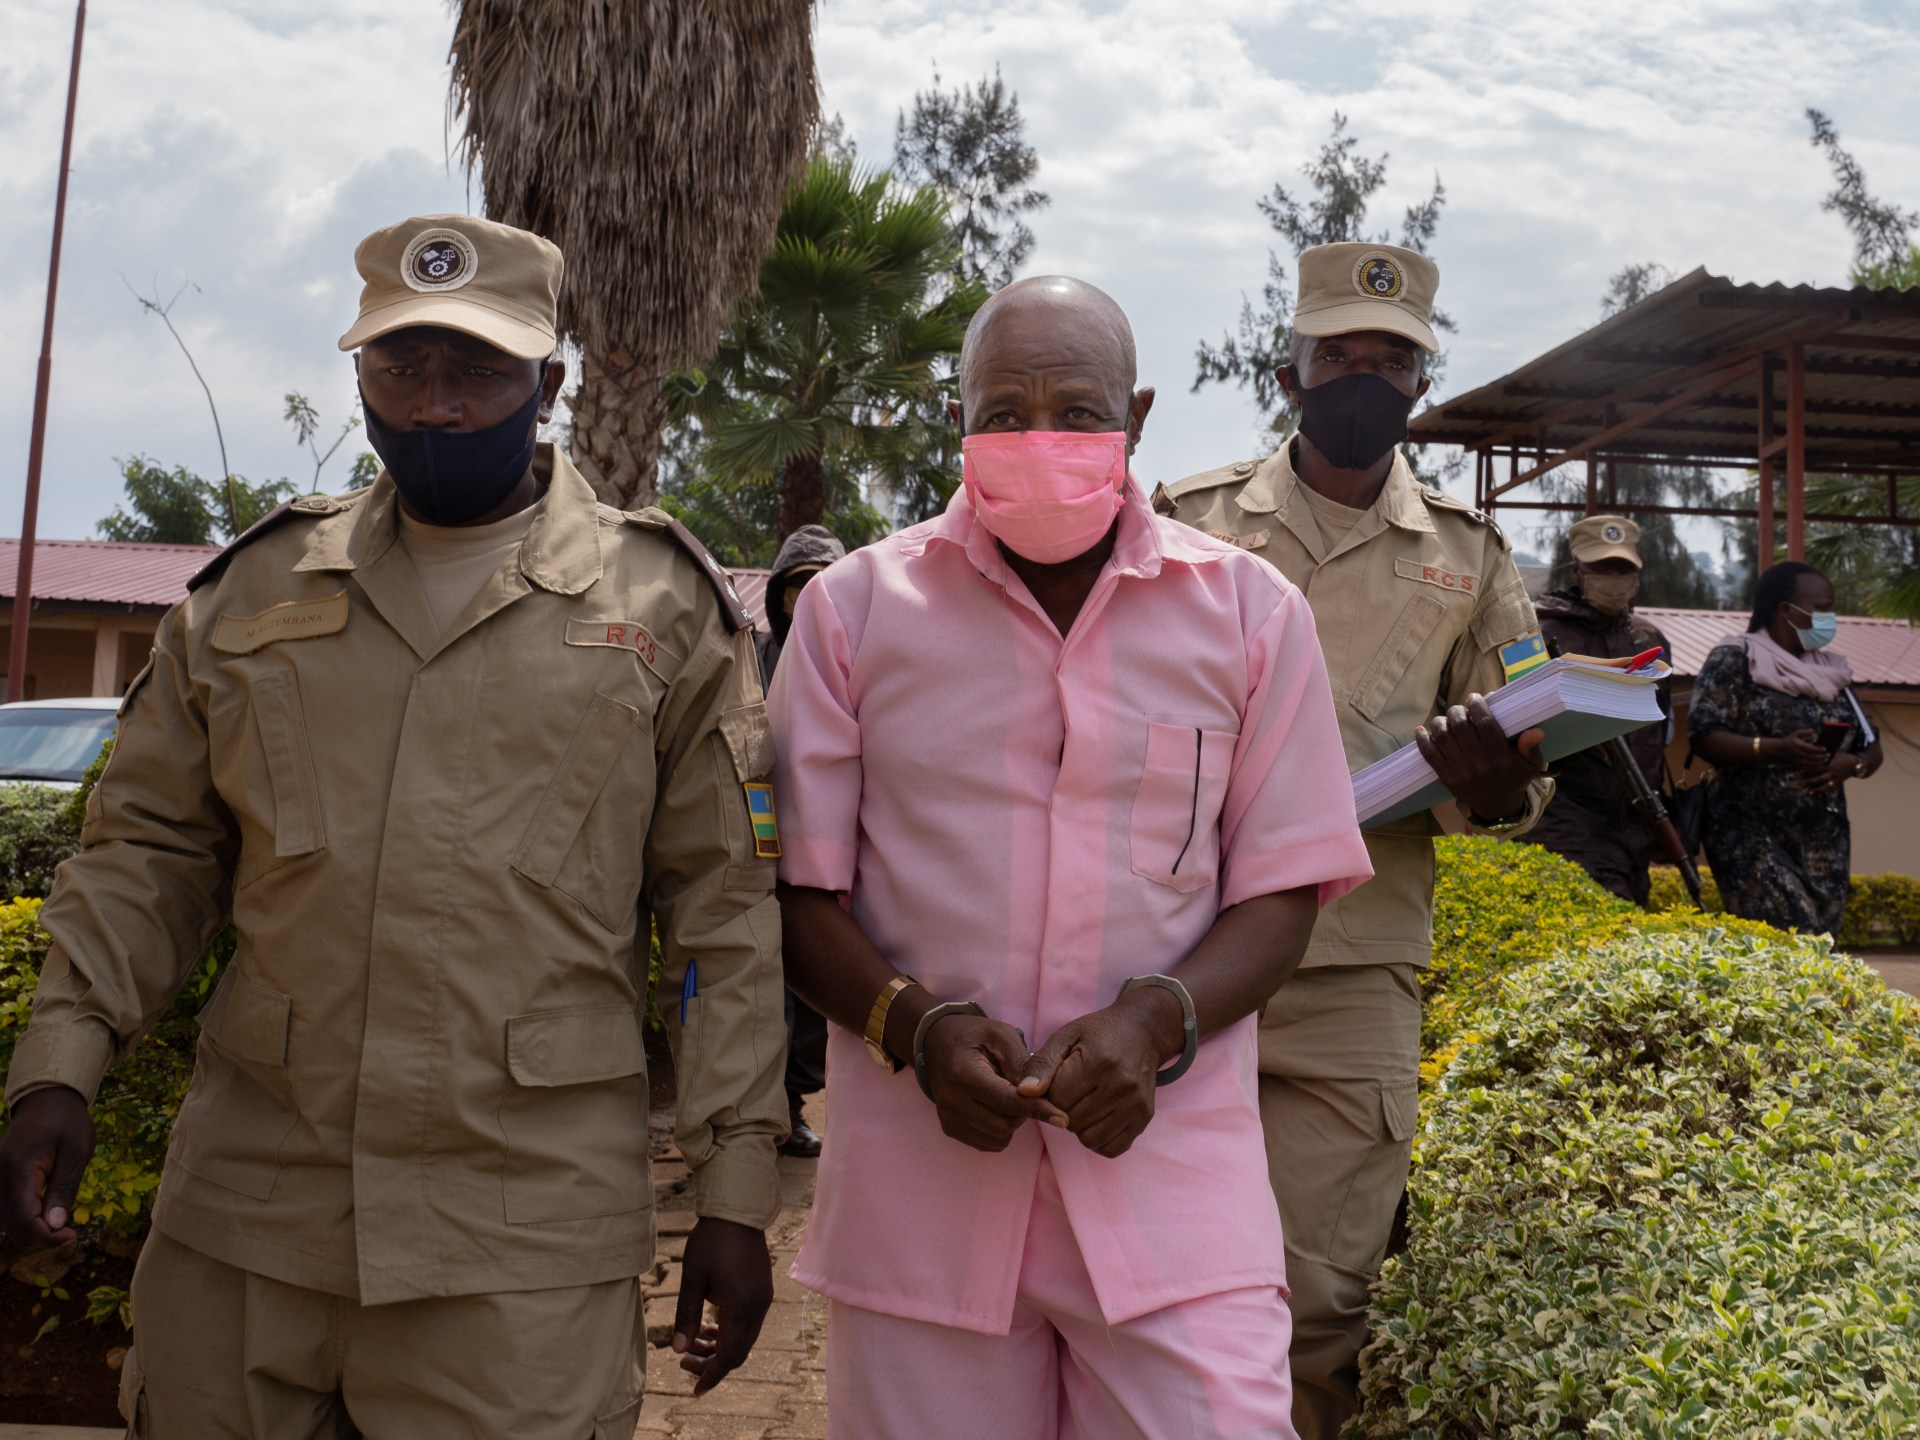 Hotel Rwanda hero Paul Rusesabagina’s prison sentence commuted